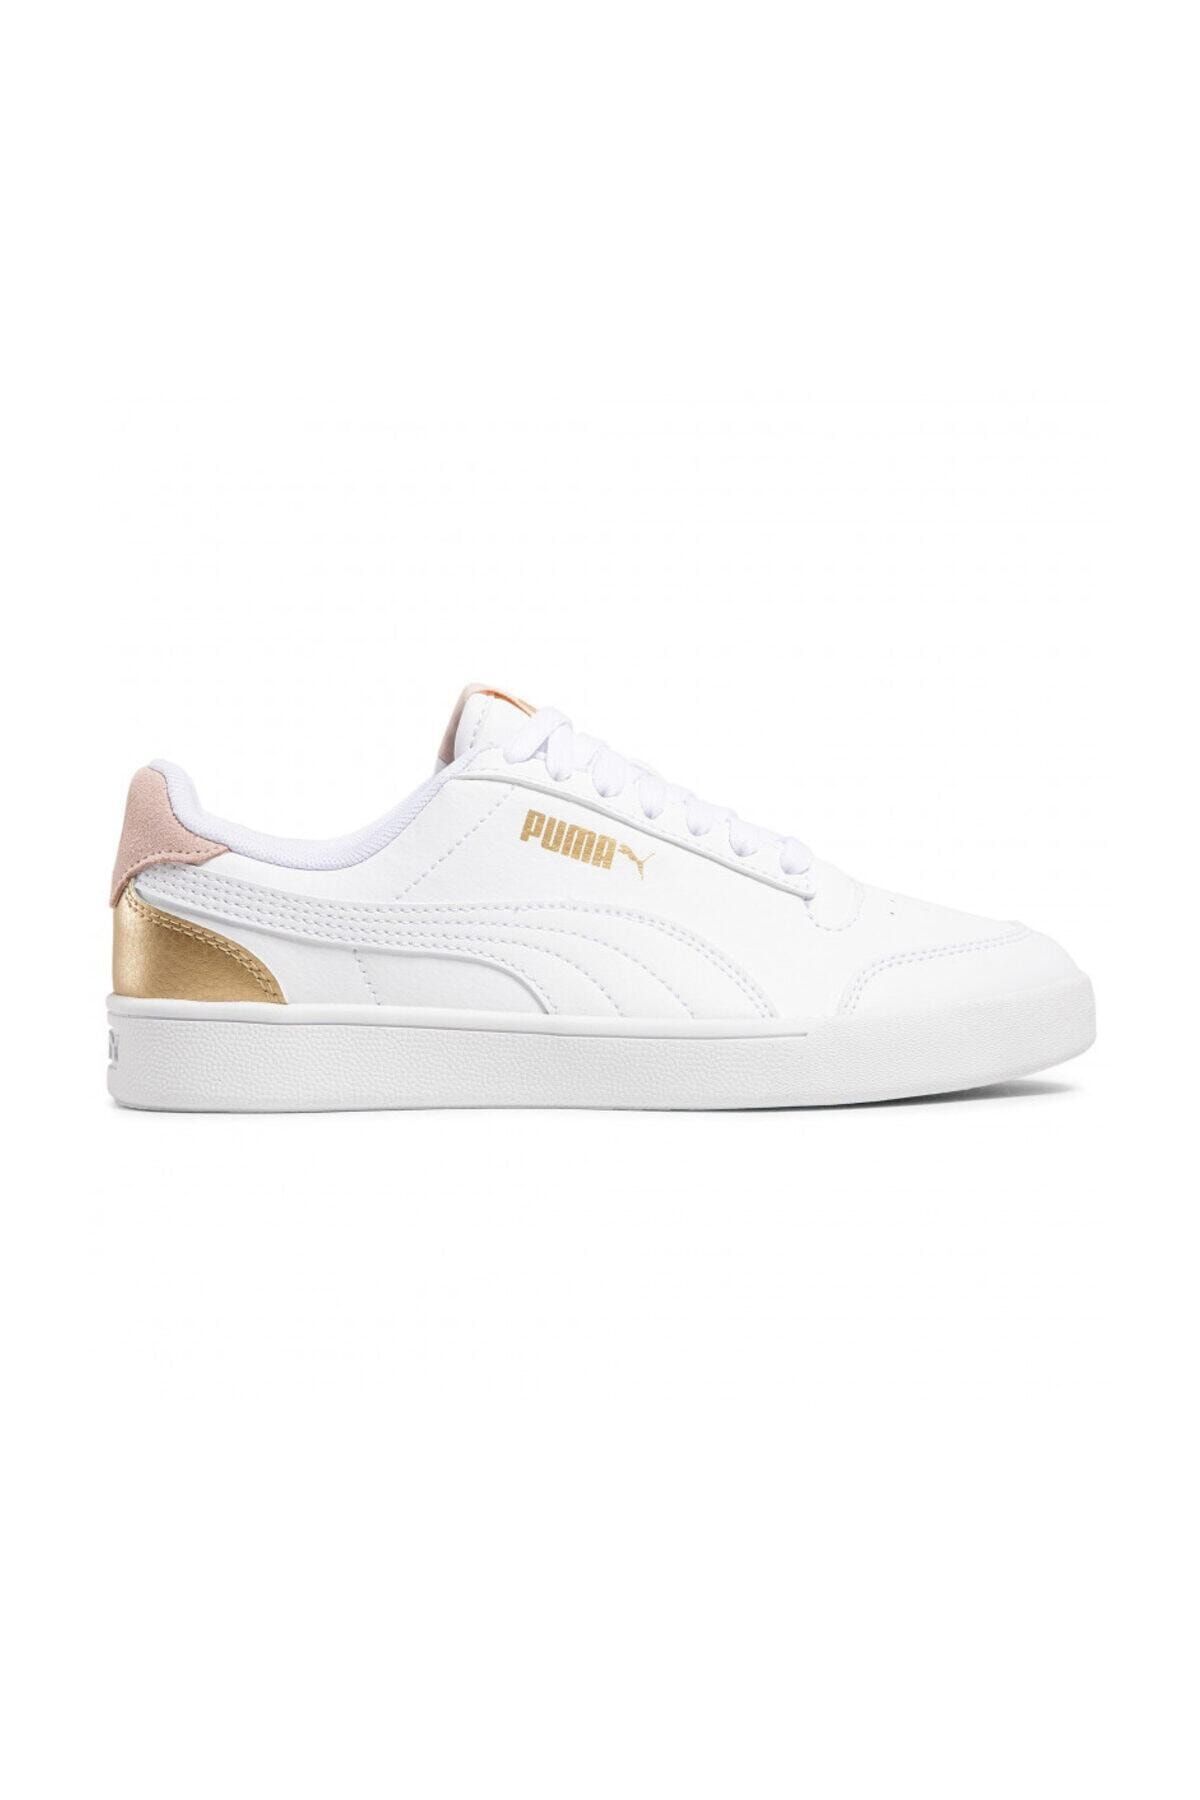 Puma SHUFFLE Beyaz Kadın Sneaker Ayakkabı 101085434